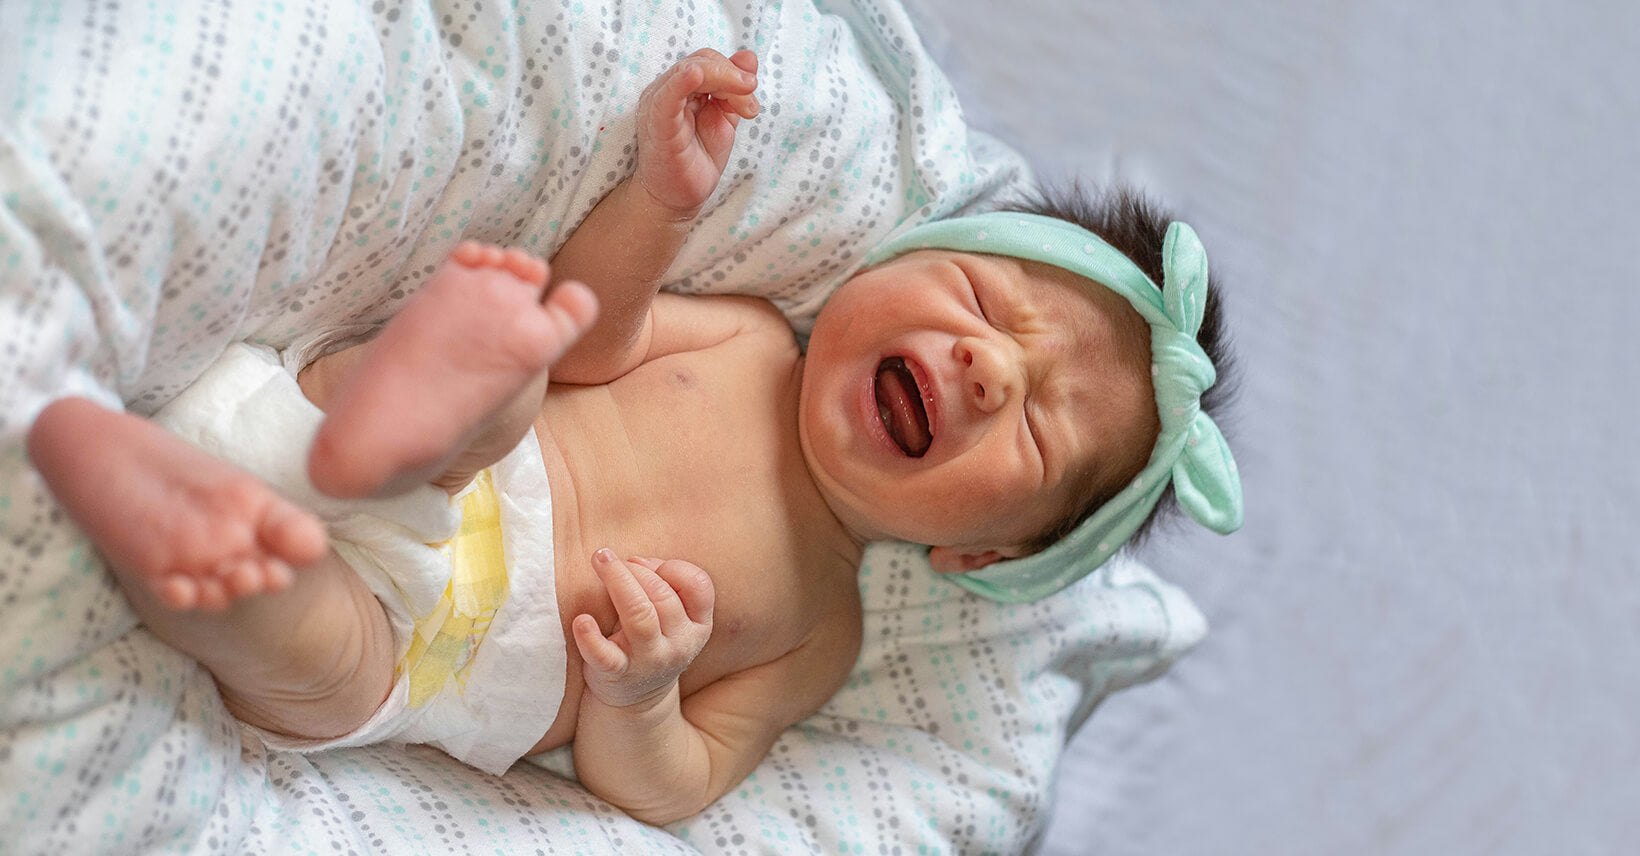 Why do Babies Suddenly Cry in Their Sleep?